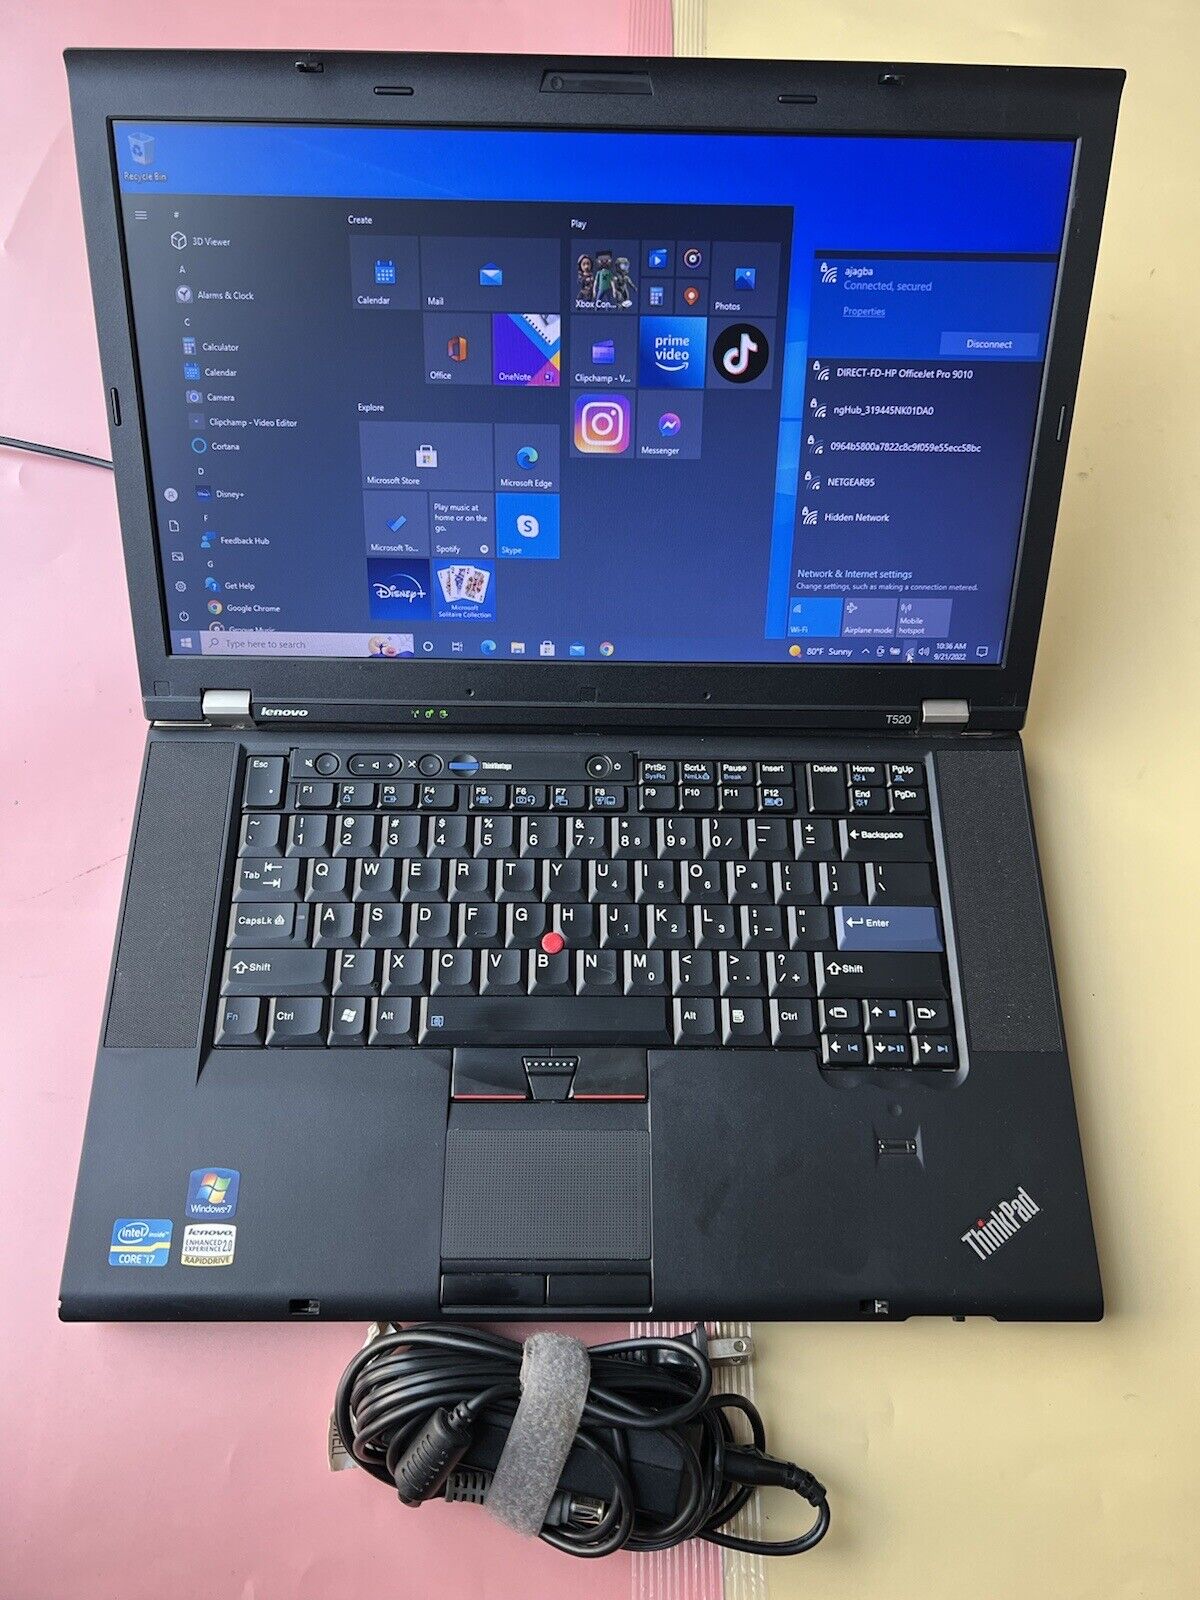 Lenovo ThinkPad T520 Core i7-2620M 500GB HDD 8GB RAM WEBCAM BLUETOOTH NVIDIA